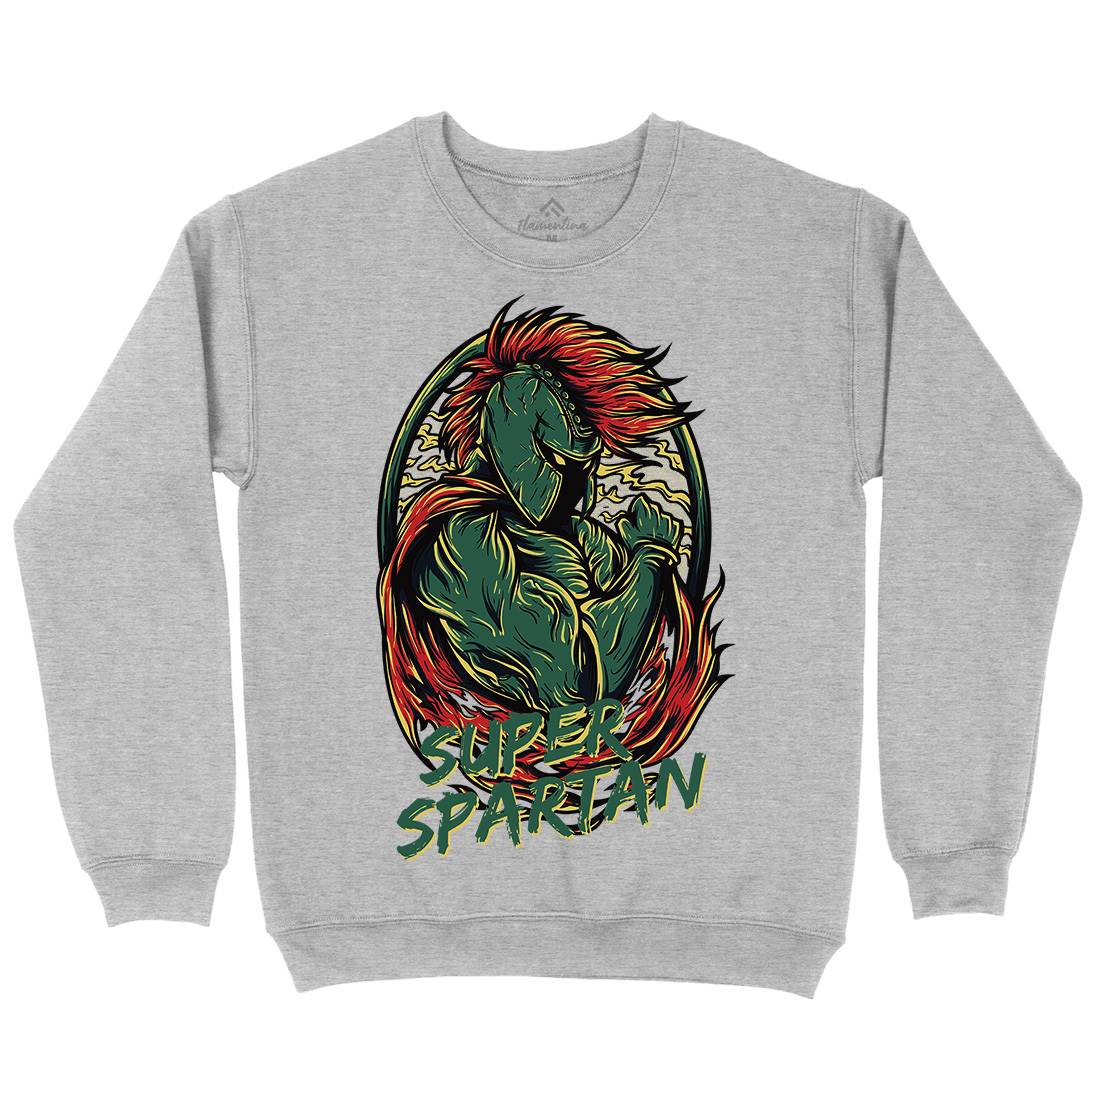 Super Spartan Kids Crew Neck Sweatshirt Warriors D843